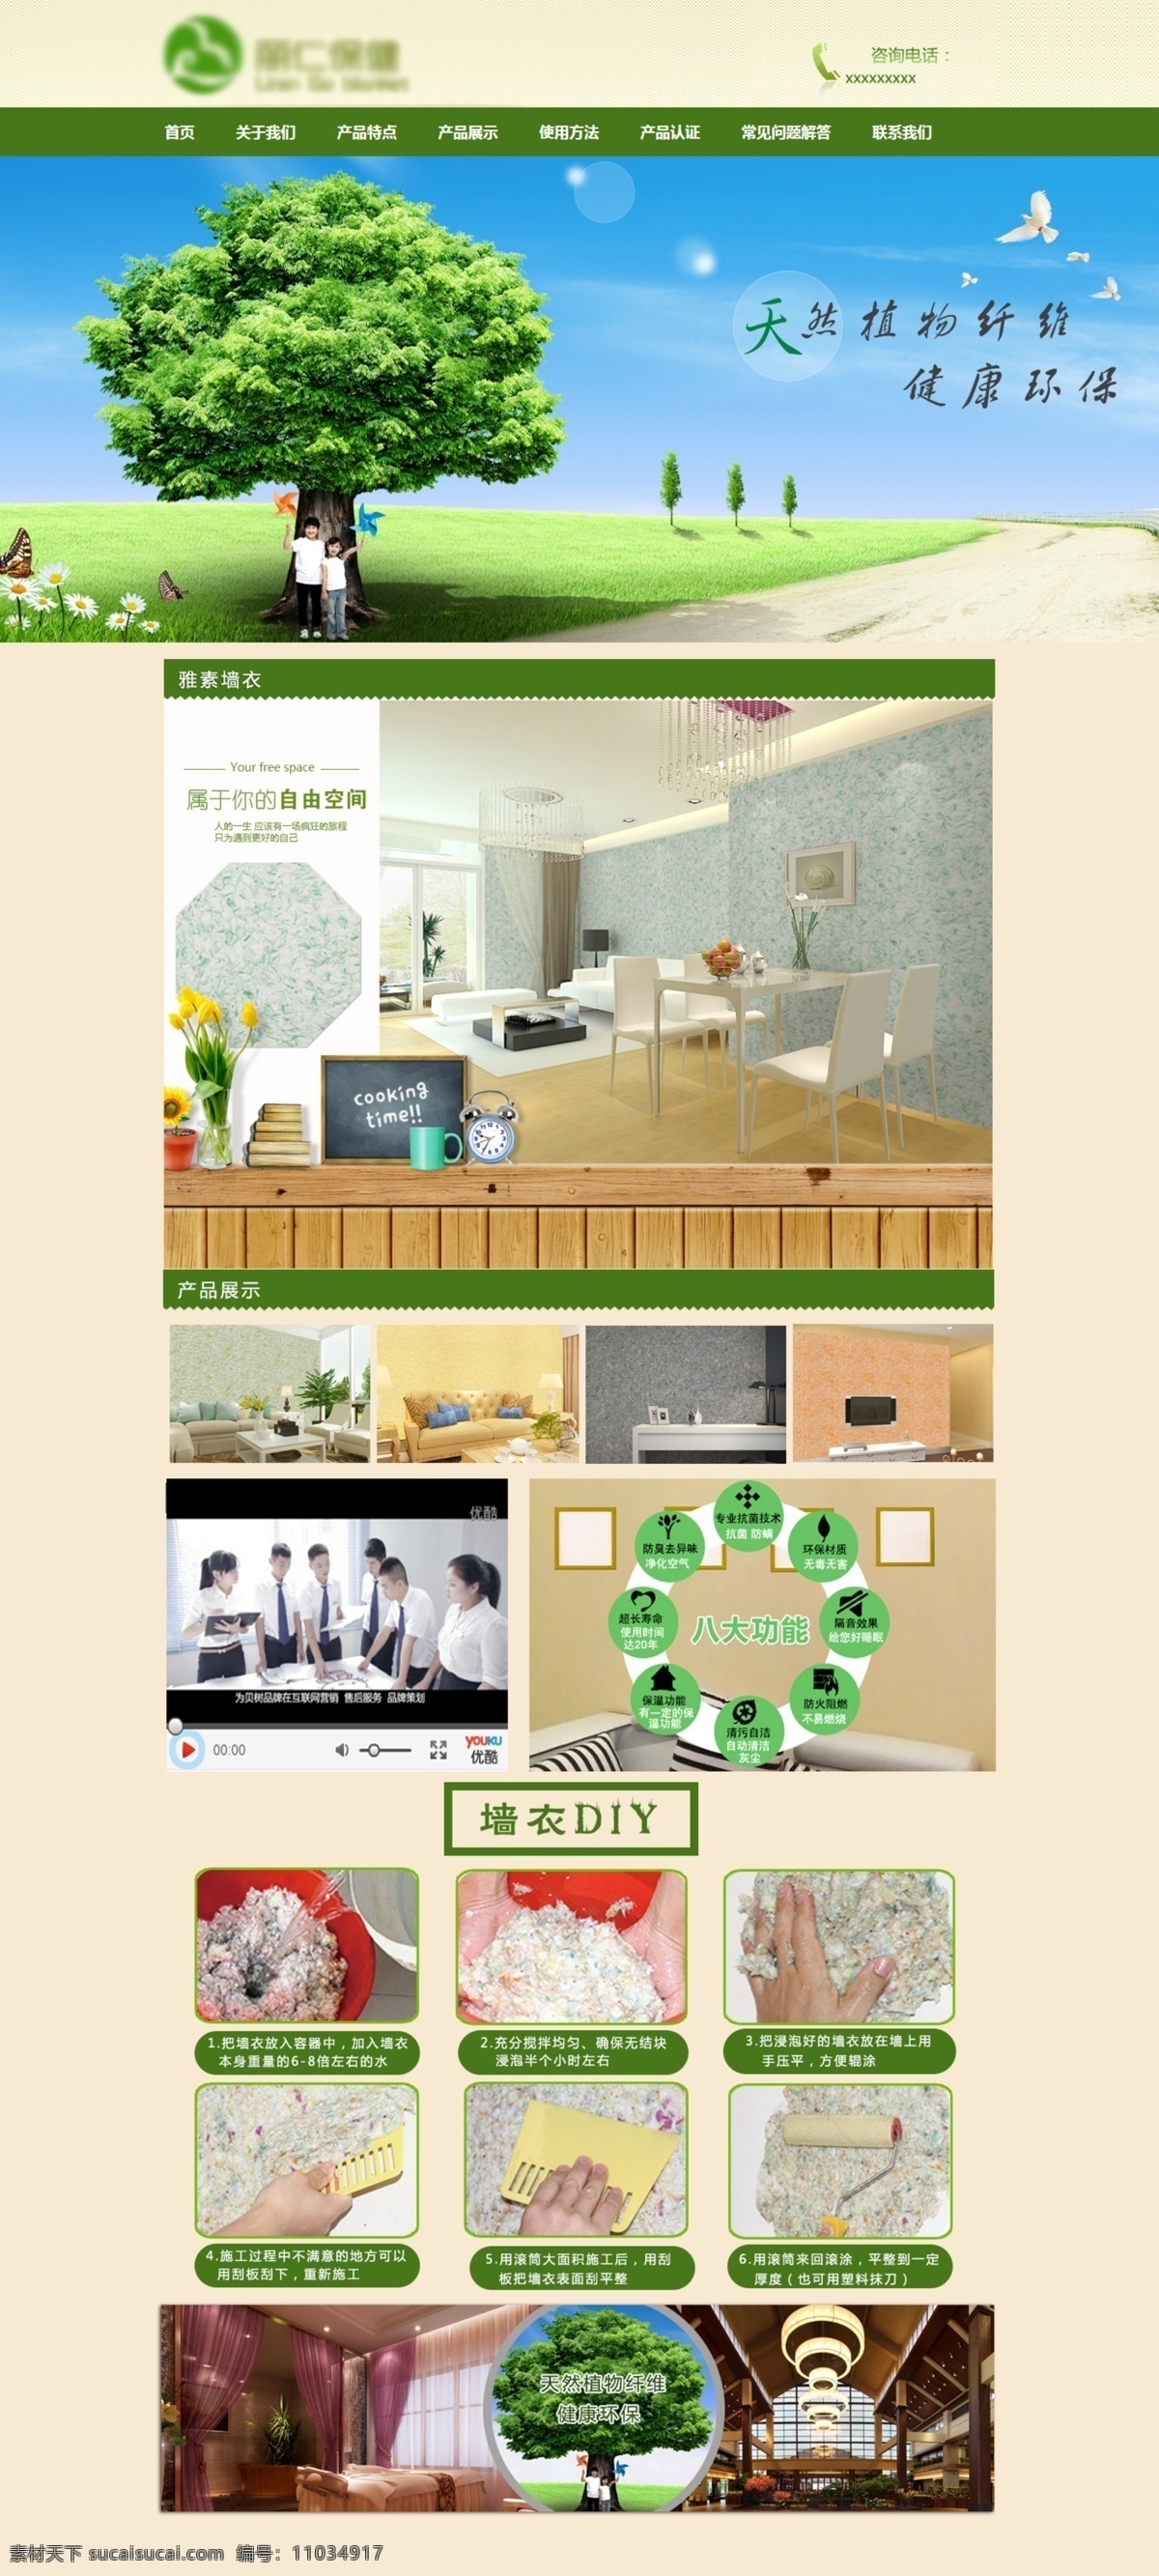 墙衣网站模板 墙衣 网站 手工diy 绿色 健康 环保 白色